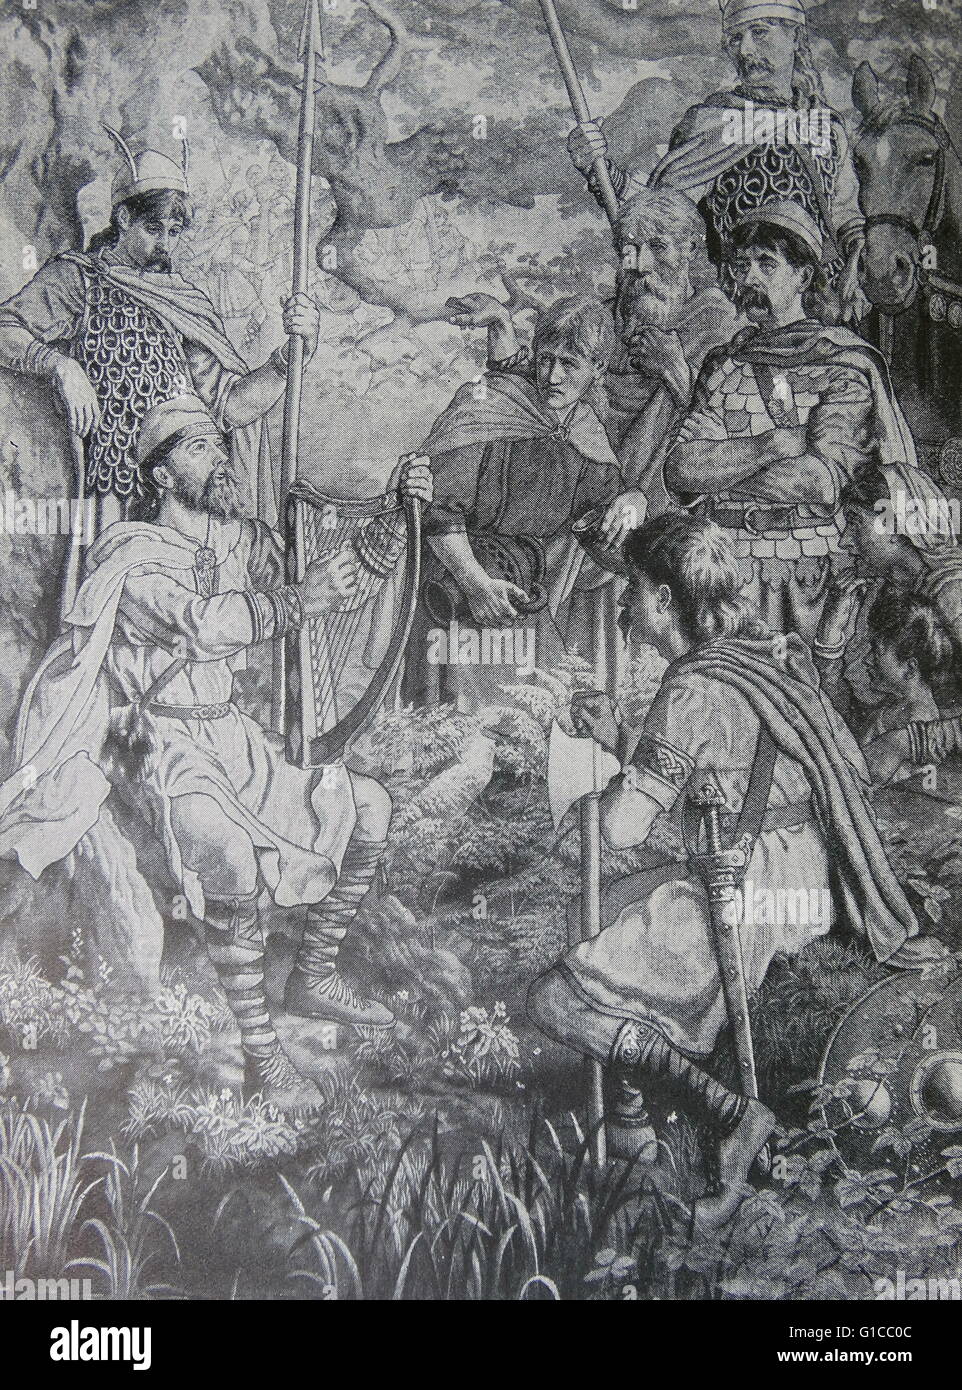 Les guerriers normands se réunissent pour planifier une attaque. Scandinavie ixe siècle Banque D'Images